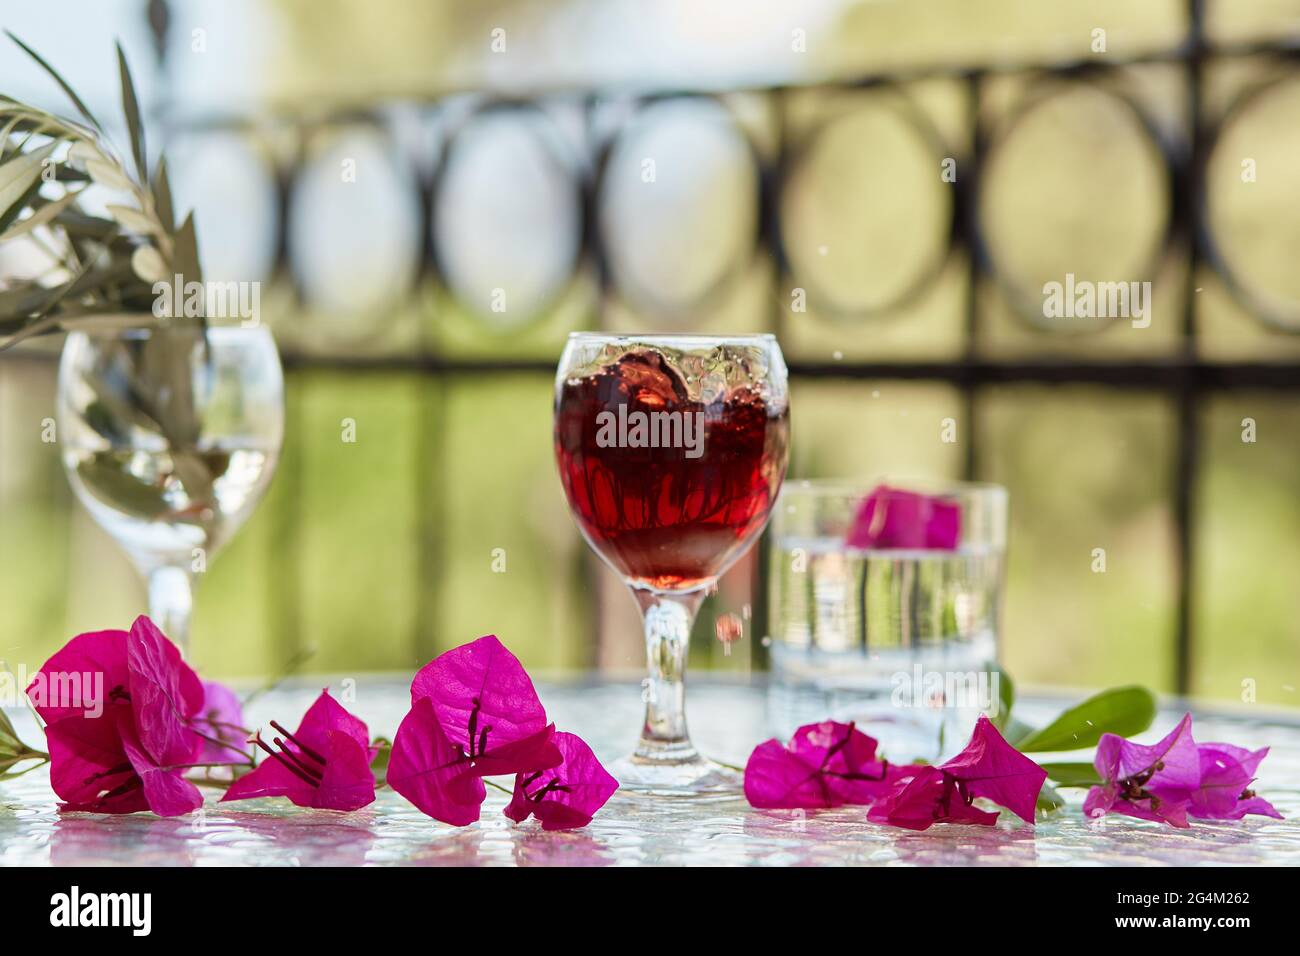 Elegantes helles Glas Rotwein, Wein spritzt ins Glas. Sommercocktails im Hintergrund. Dekorative rosa Blüten und ein Zweig des Olivenbaums Stockfoto